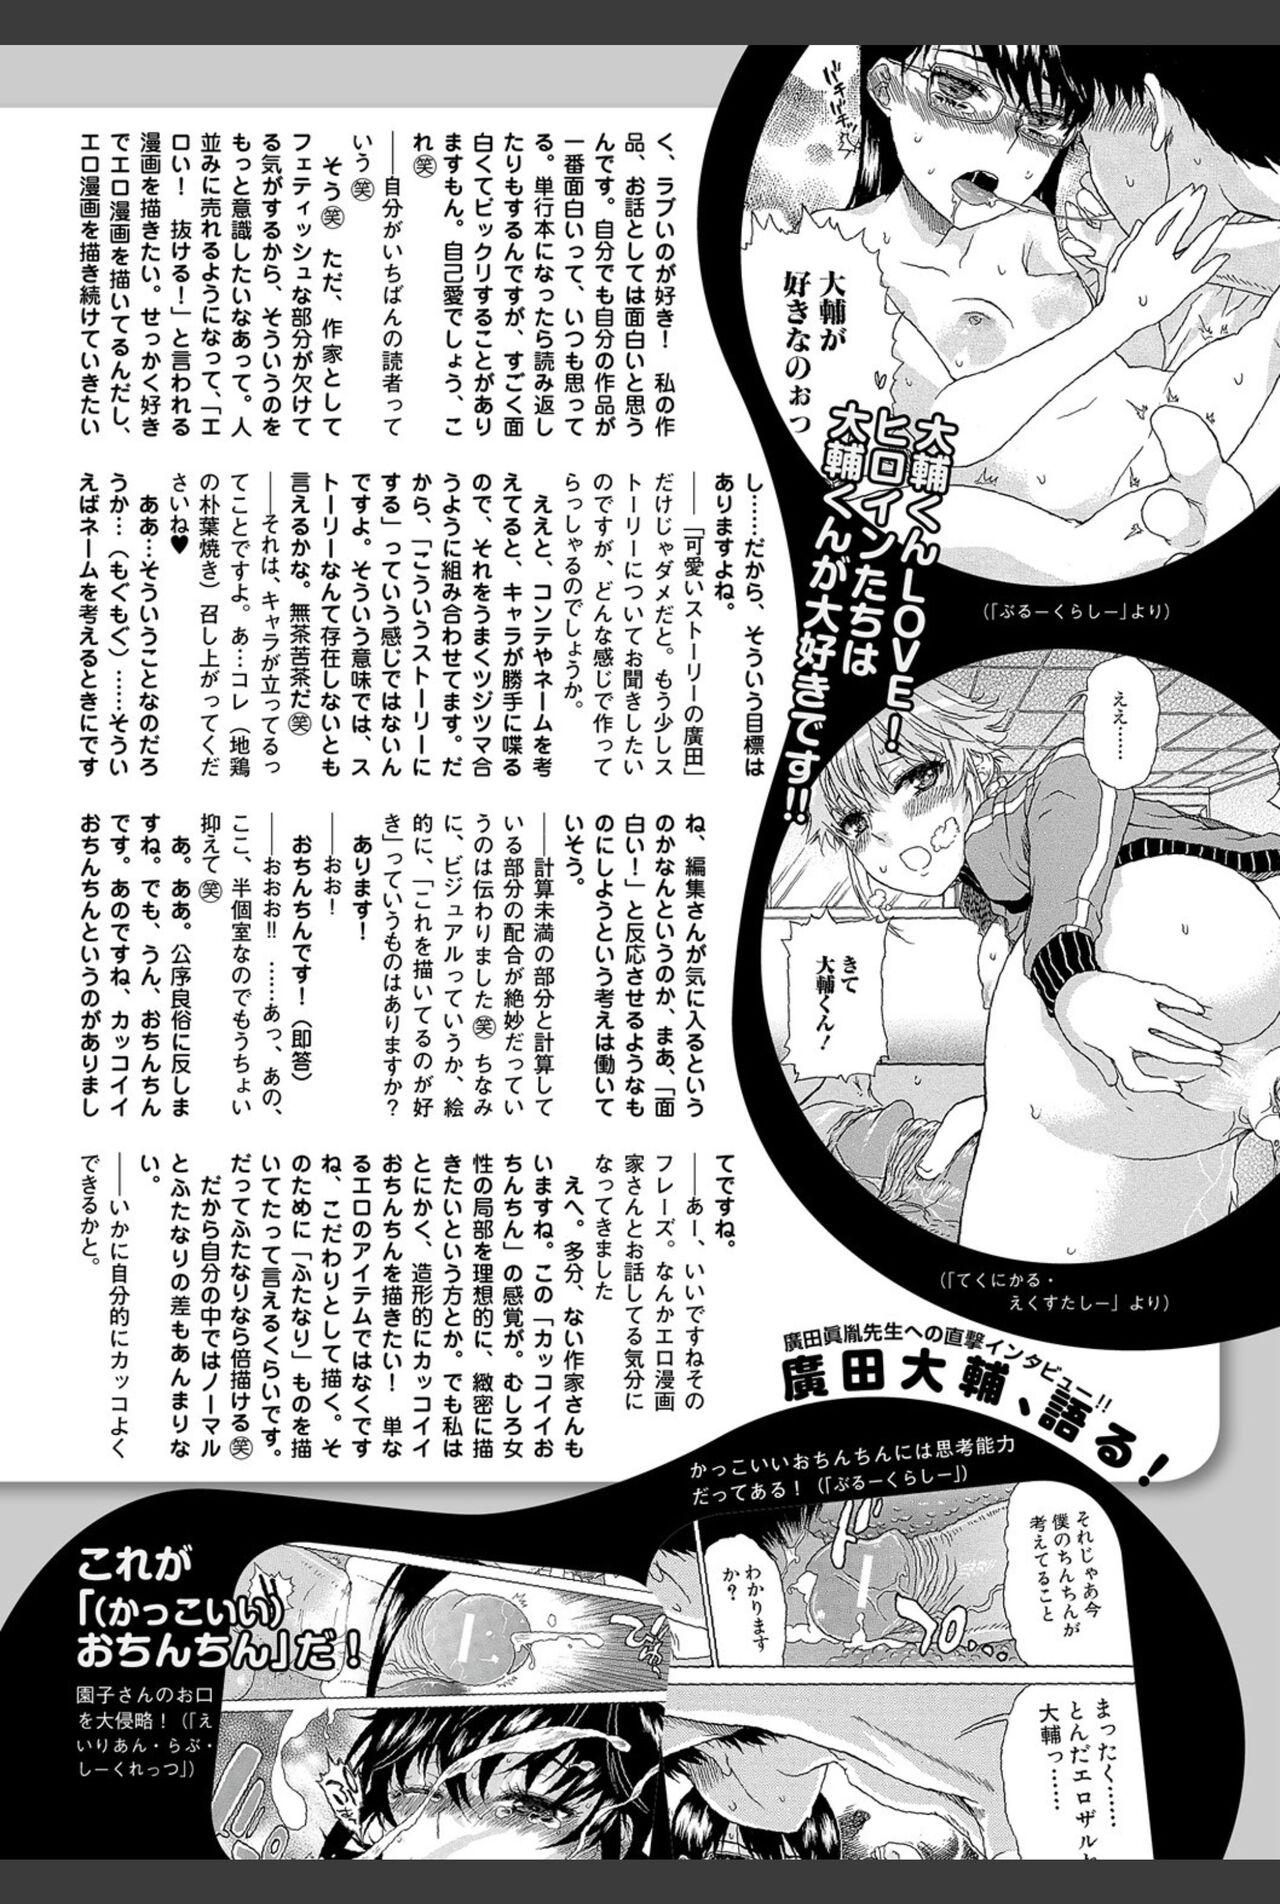 Bishoujo Kakumei KIWAME 2011-02 Vol.12 144